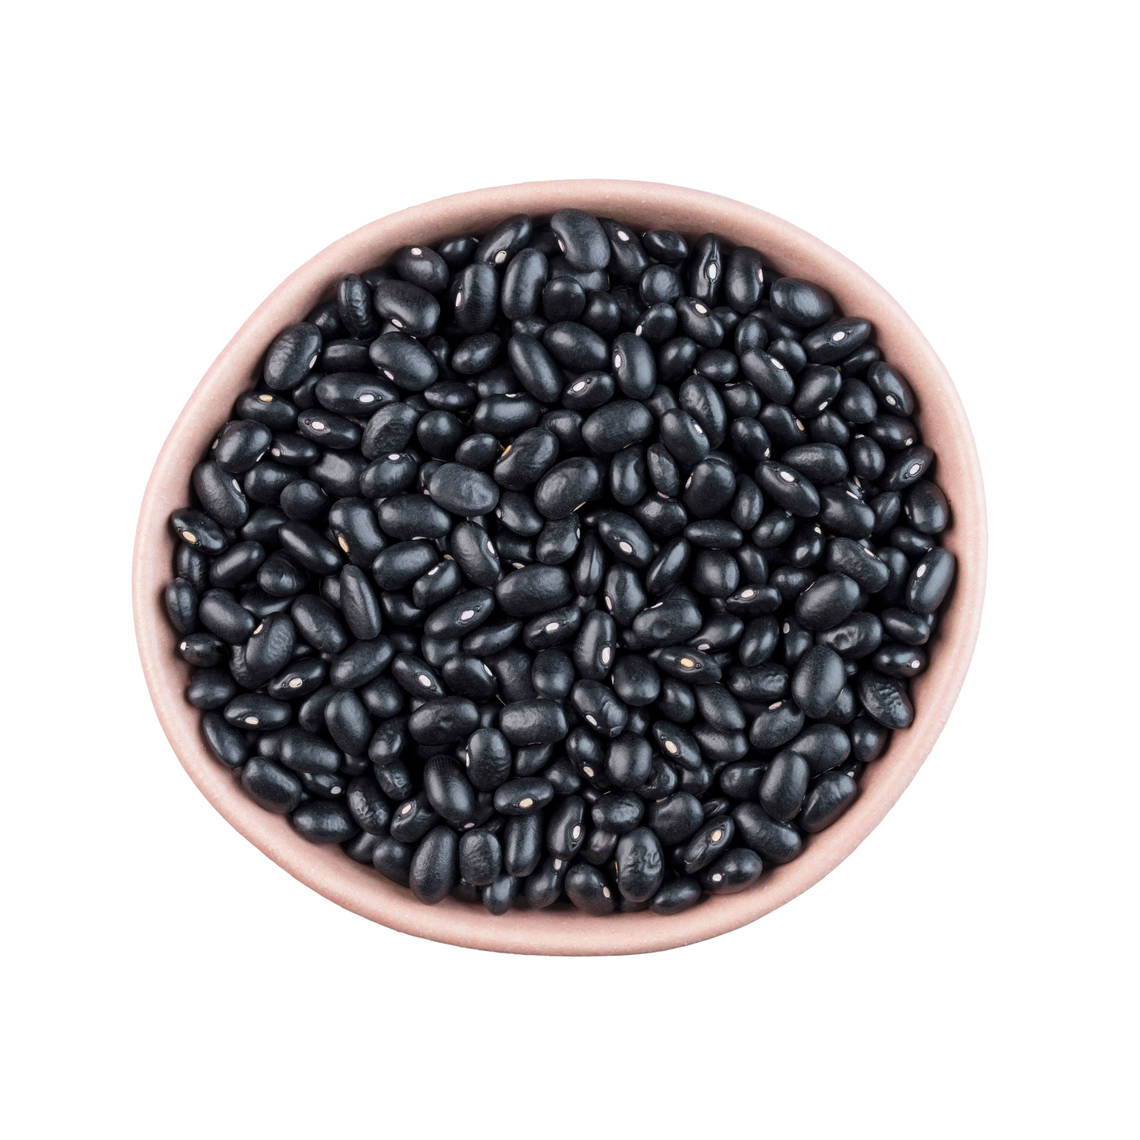 Los porotos negros son una de las legumbres más versátiles, los consumen tanto carnívoros como vegetarianos.